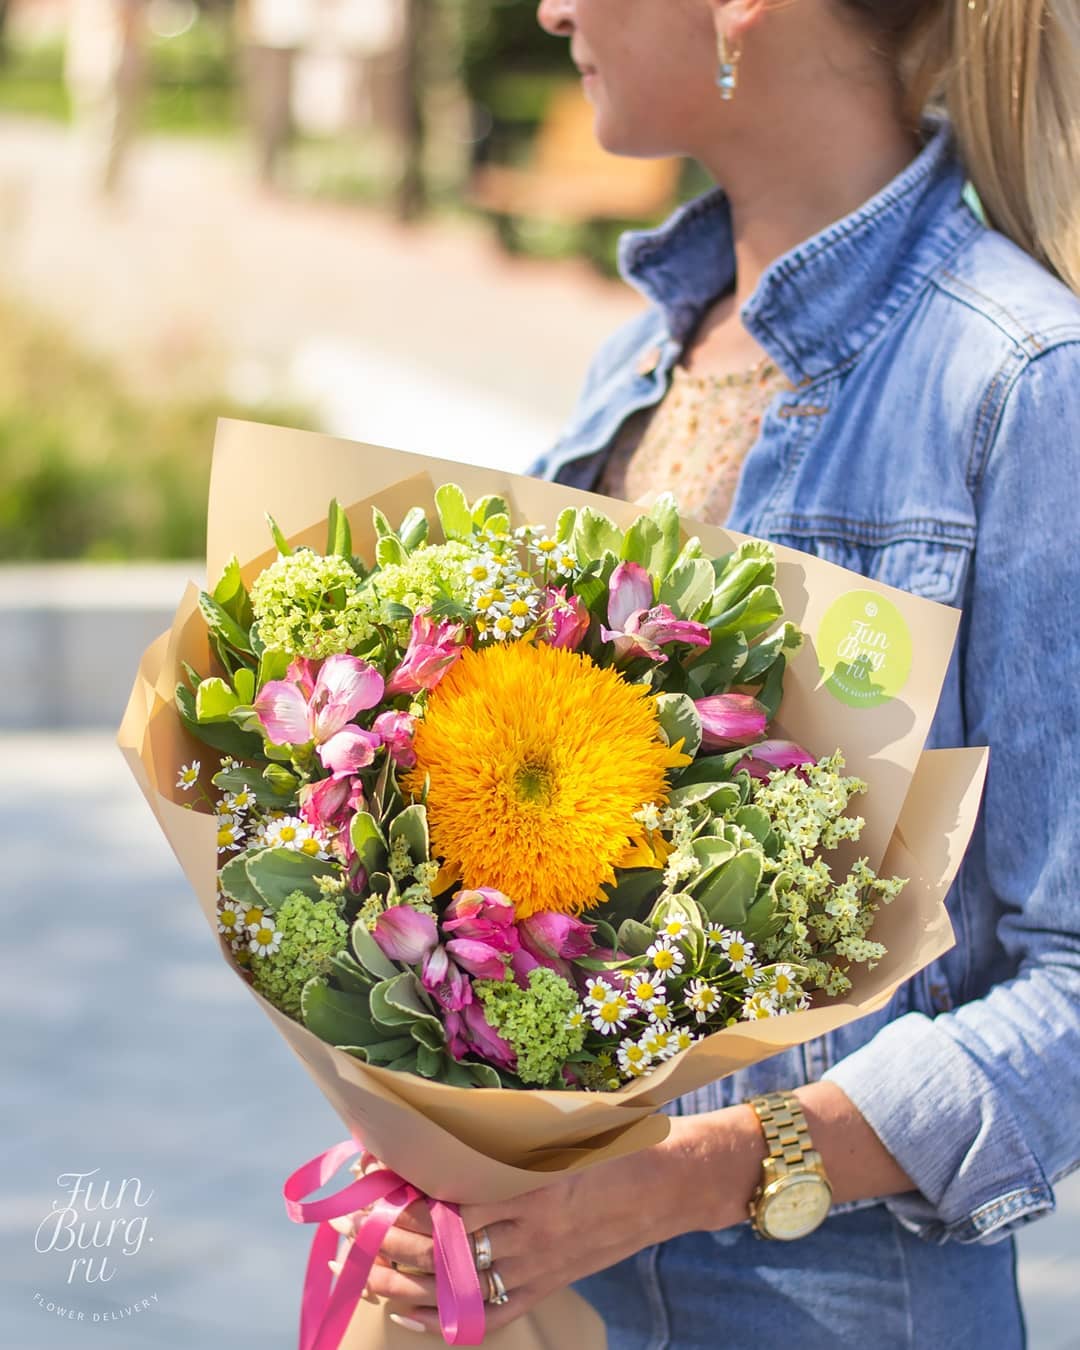 Доставка|Цветы|Шары|Подарки - Поймали в букет последние летние деньки ☀️
⠀
________
На сайте букет называется "Солнышко" 💛 Доступен и на 1 Сентября 📚
⠀
_______
#funburgru #funburgflowers